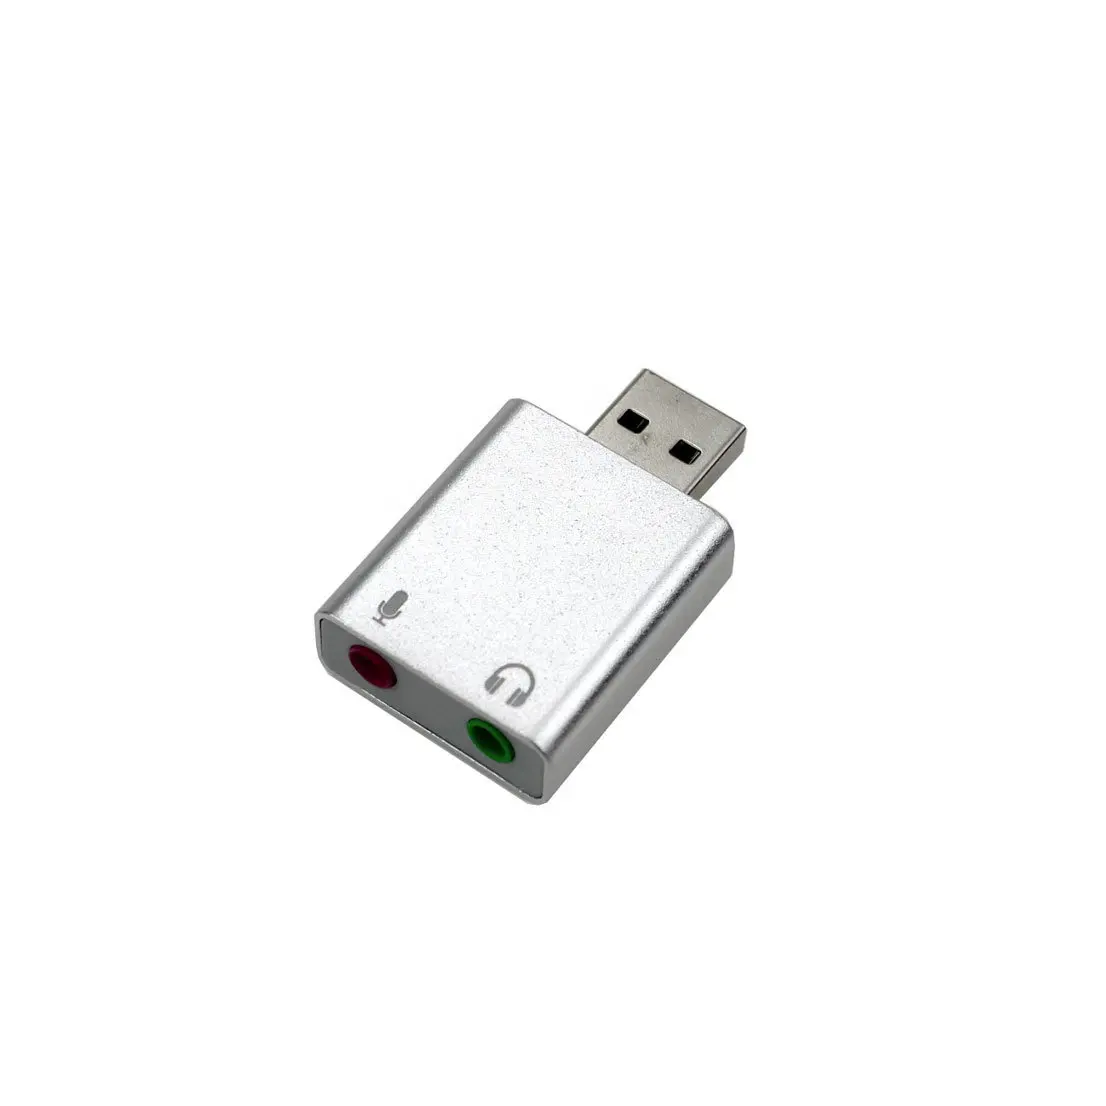 프로모션 공장 가격 외부 알루미늄 합금 USB 인터페이스 사운드 카드 7.1 채널 오디오 인터페이스 플러그 앤 플레이 사운드 카드